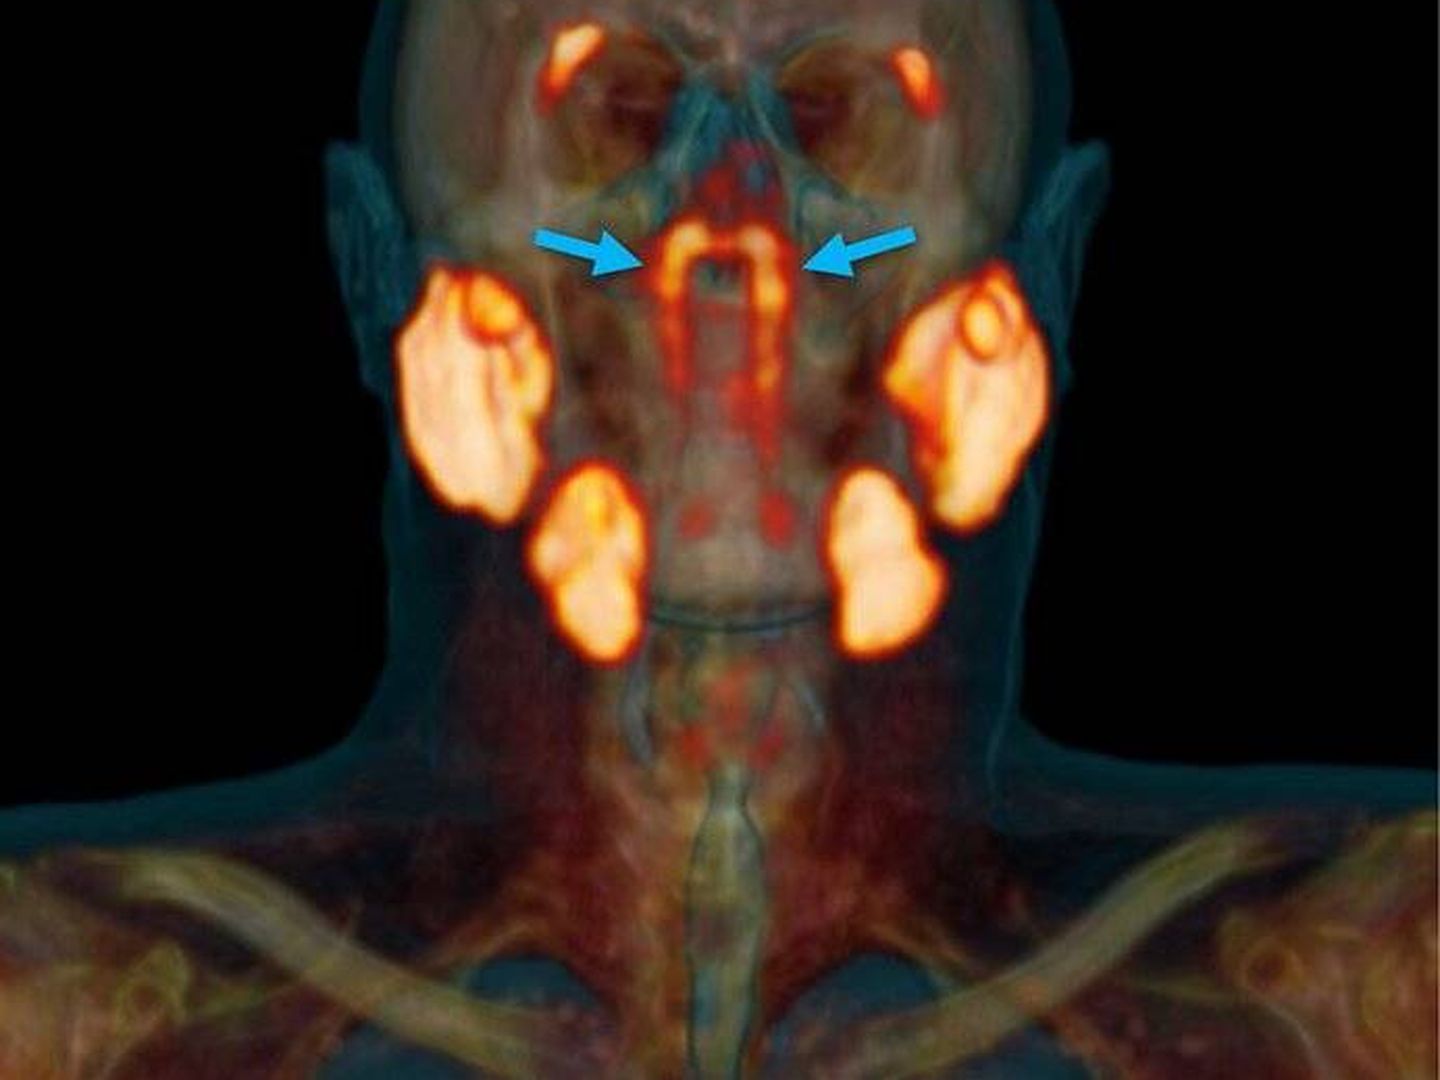 Señaladas con una flecha azul, las glándulas salivales recién descubiertas. Foto: (The Netherlands Cancer Institute